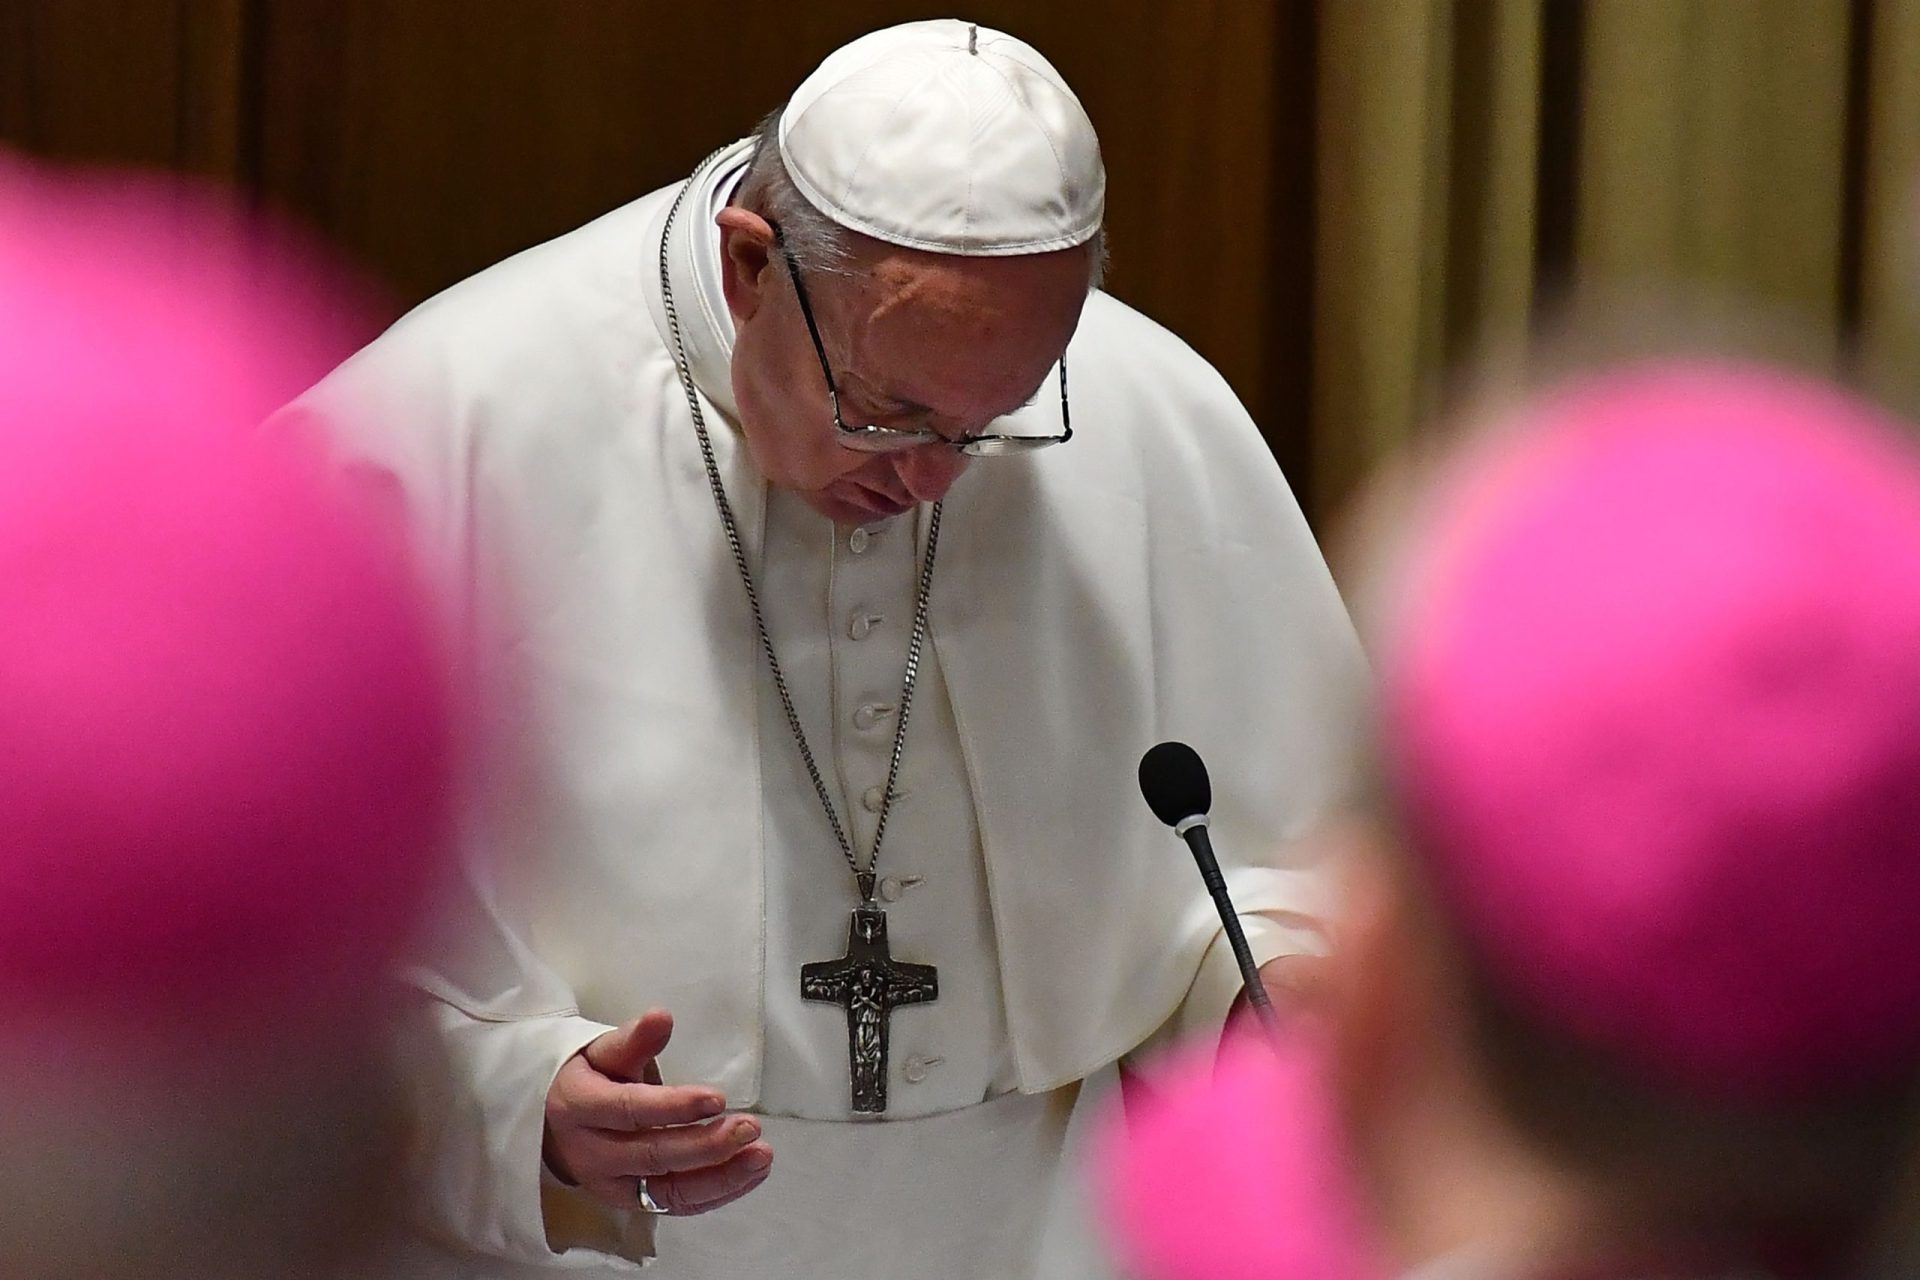 Vaticano começa hoje debate sobre escândalo de abusos sexuais a crianças